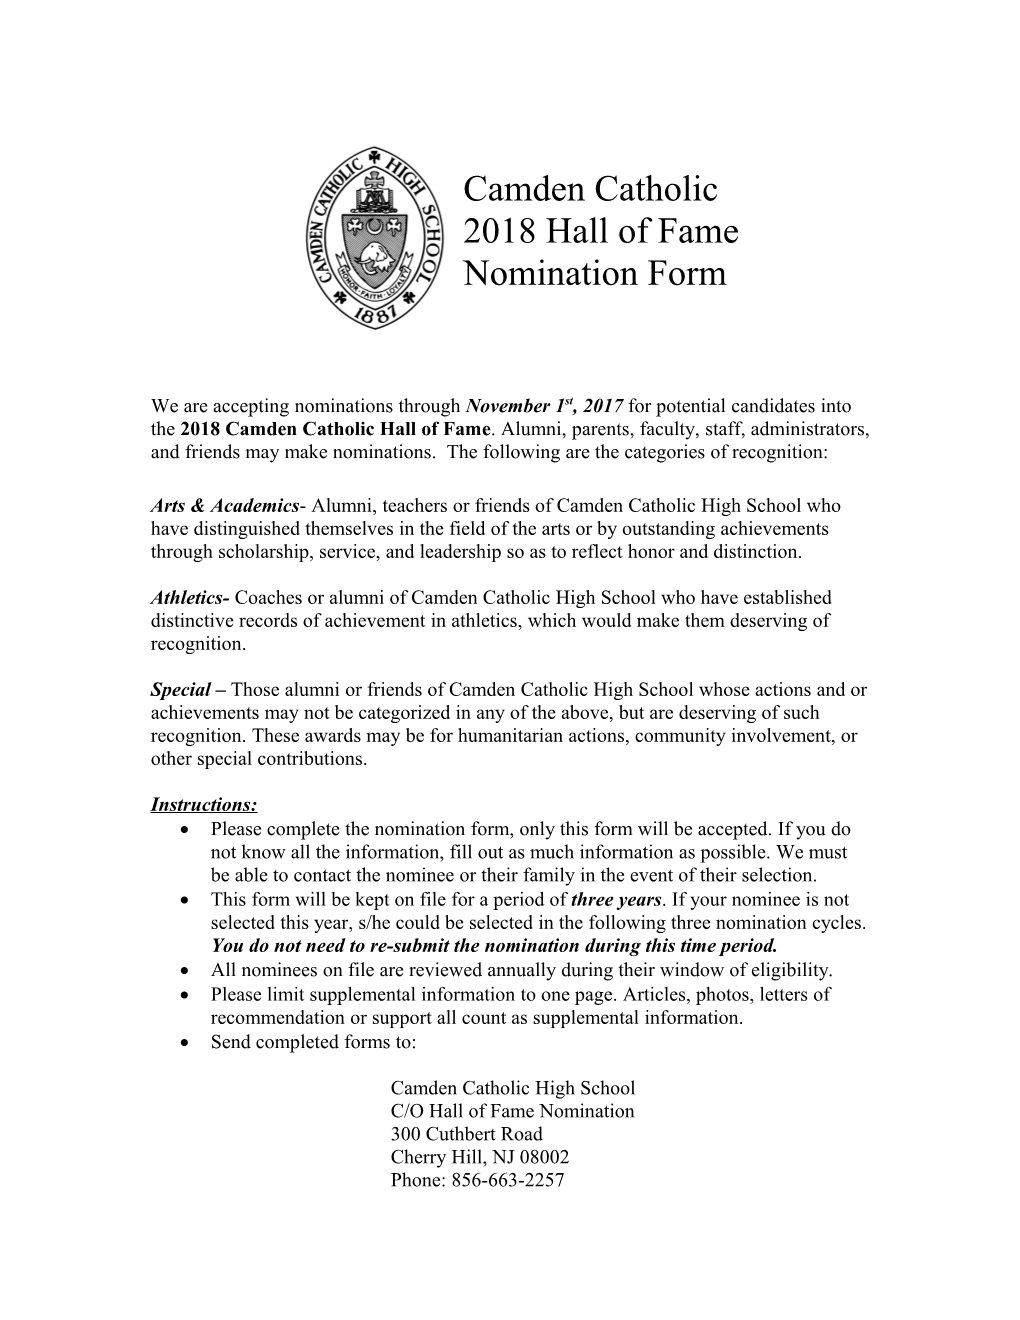 Camden Catholic Hall of Fame Nomination Form